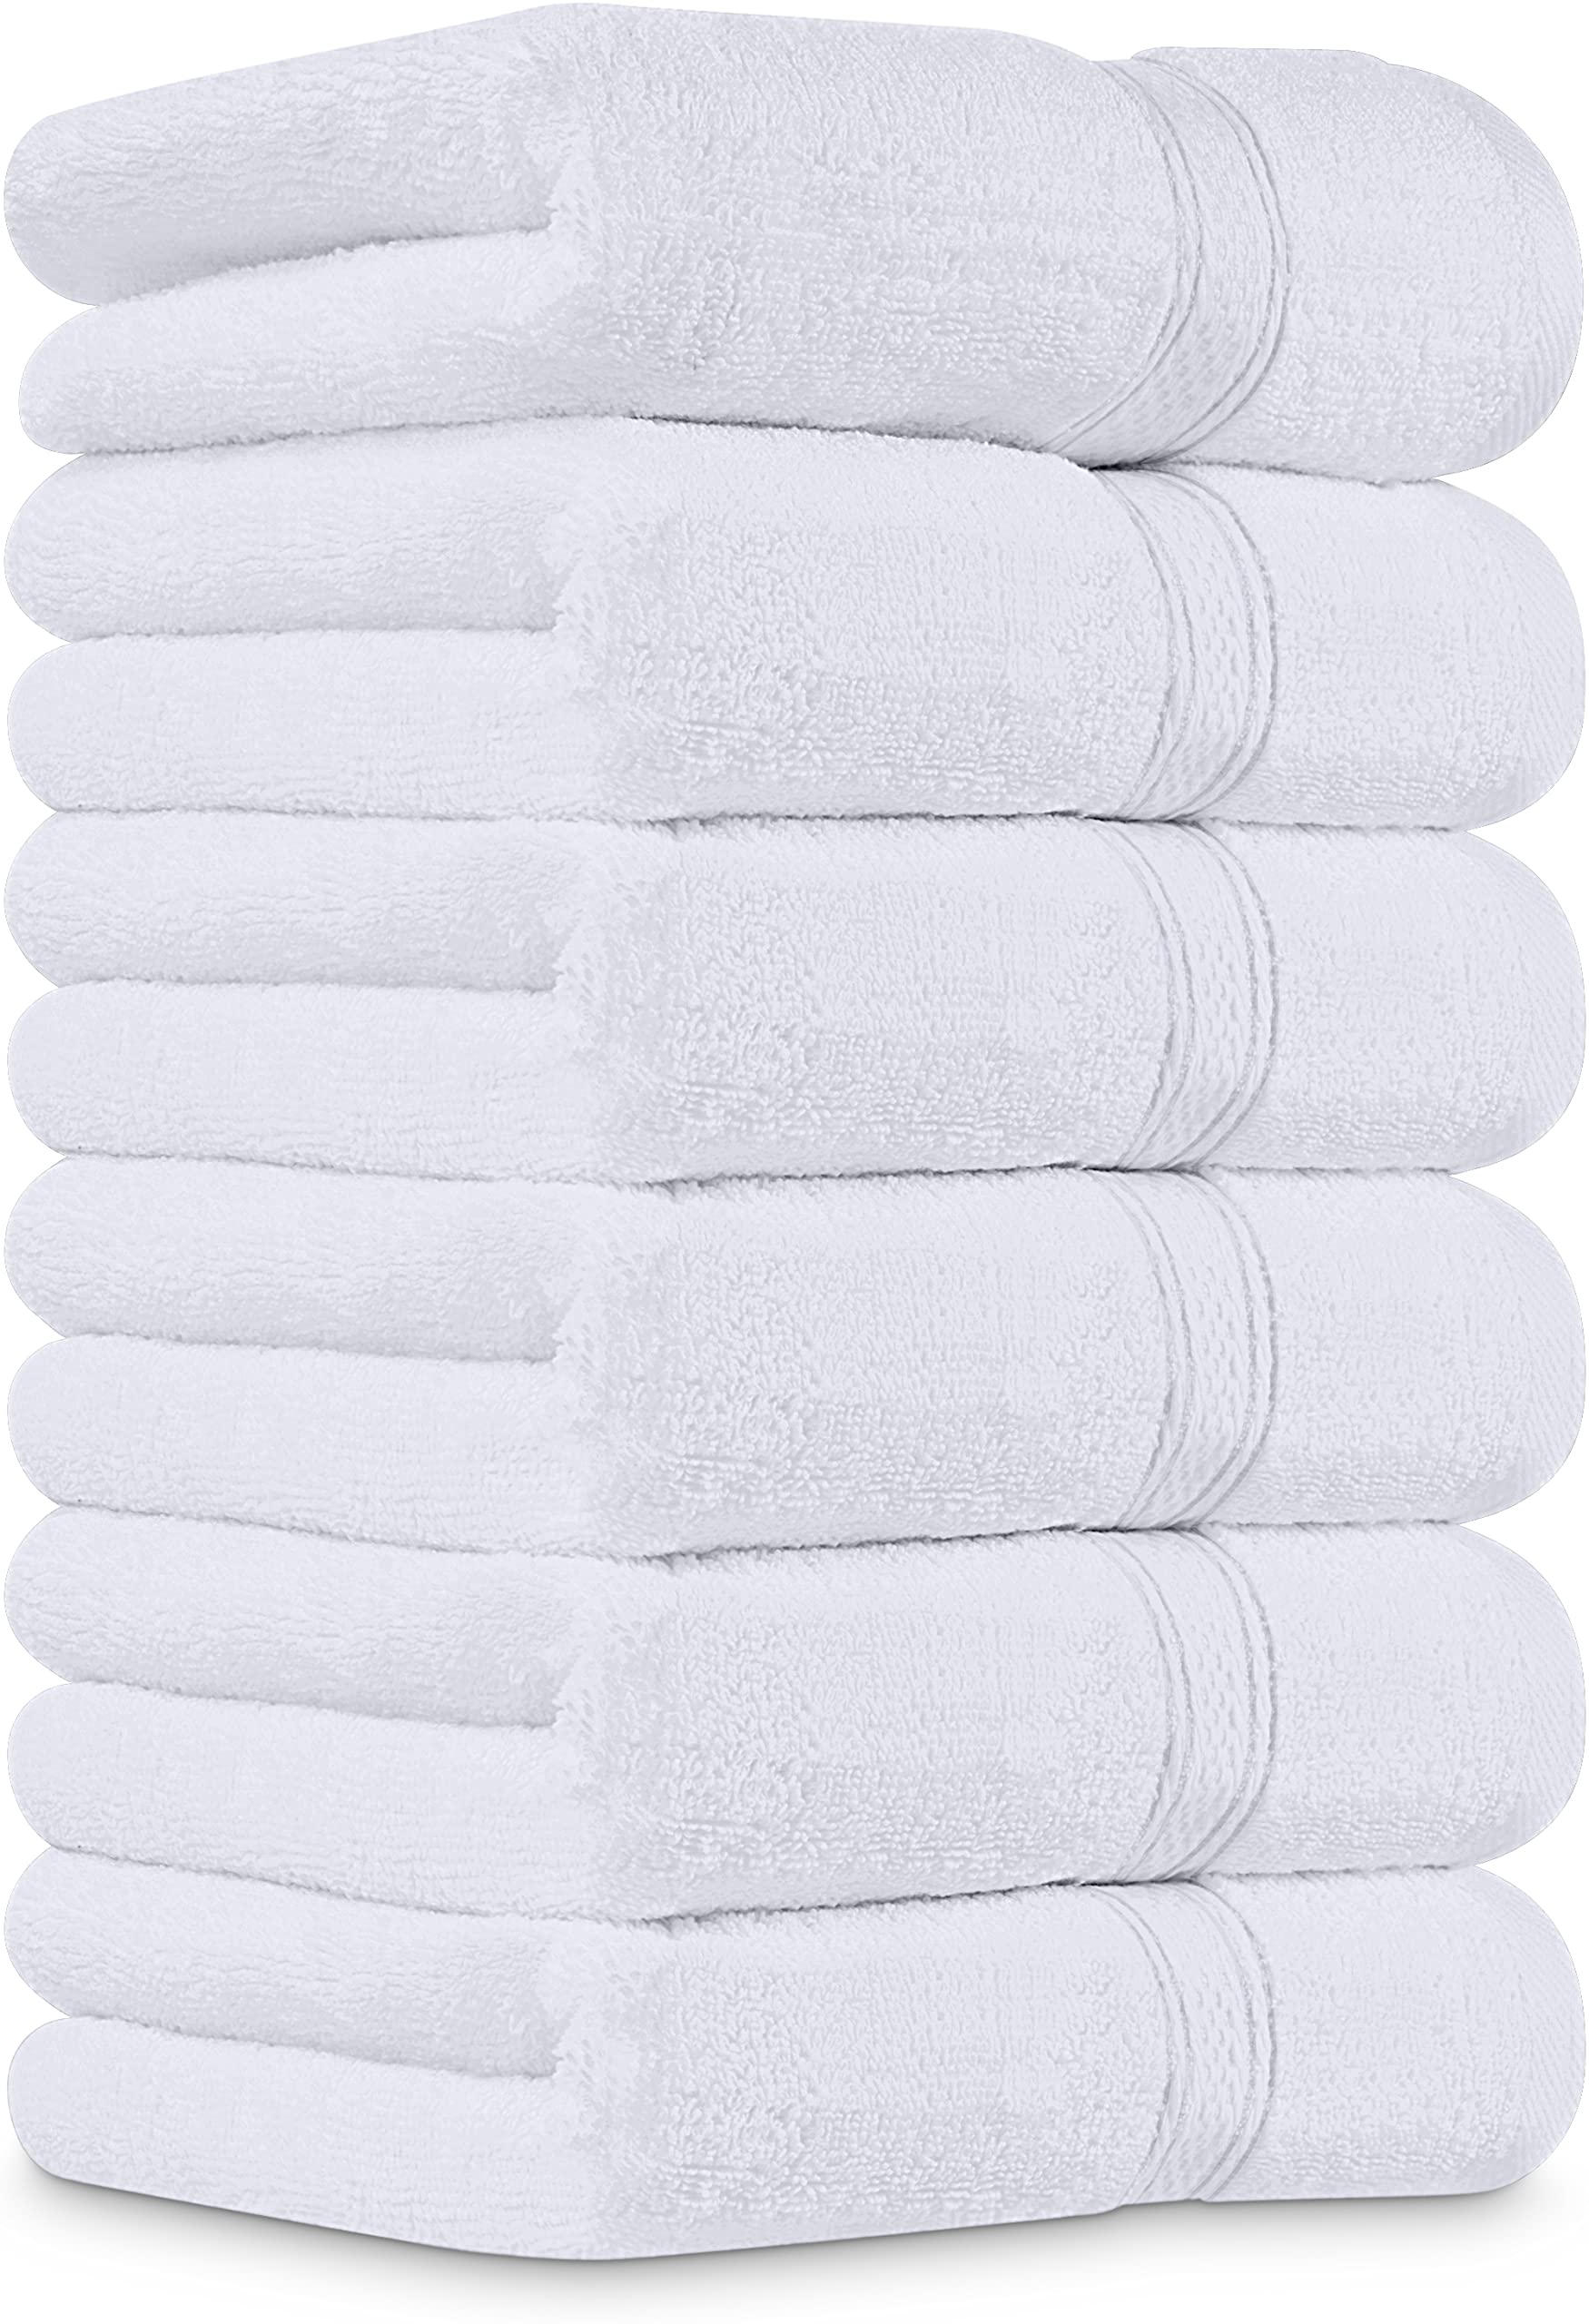 Classique Utopia Towels - Lot de 6 Essuie Mains de Qualité Supérieure, (41 x 71 CM) 100% Coton filé, Ultra Doux et très Absorbant pour la Salle de Bain, Le Gymnase, la Douche, l´hôtel et Le Spa (Blanc) o9KF8ZLPP en France Online